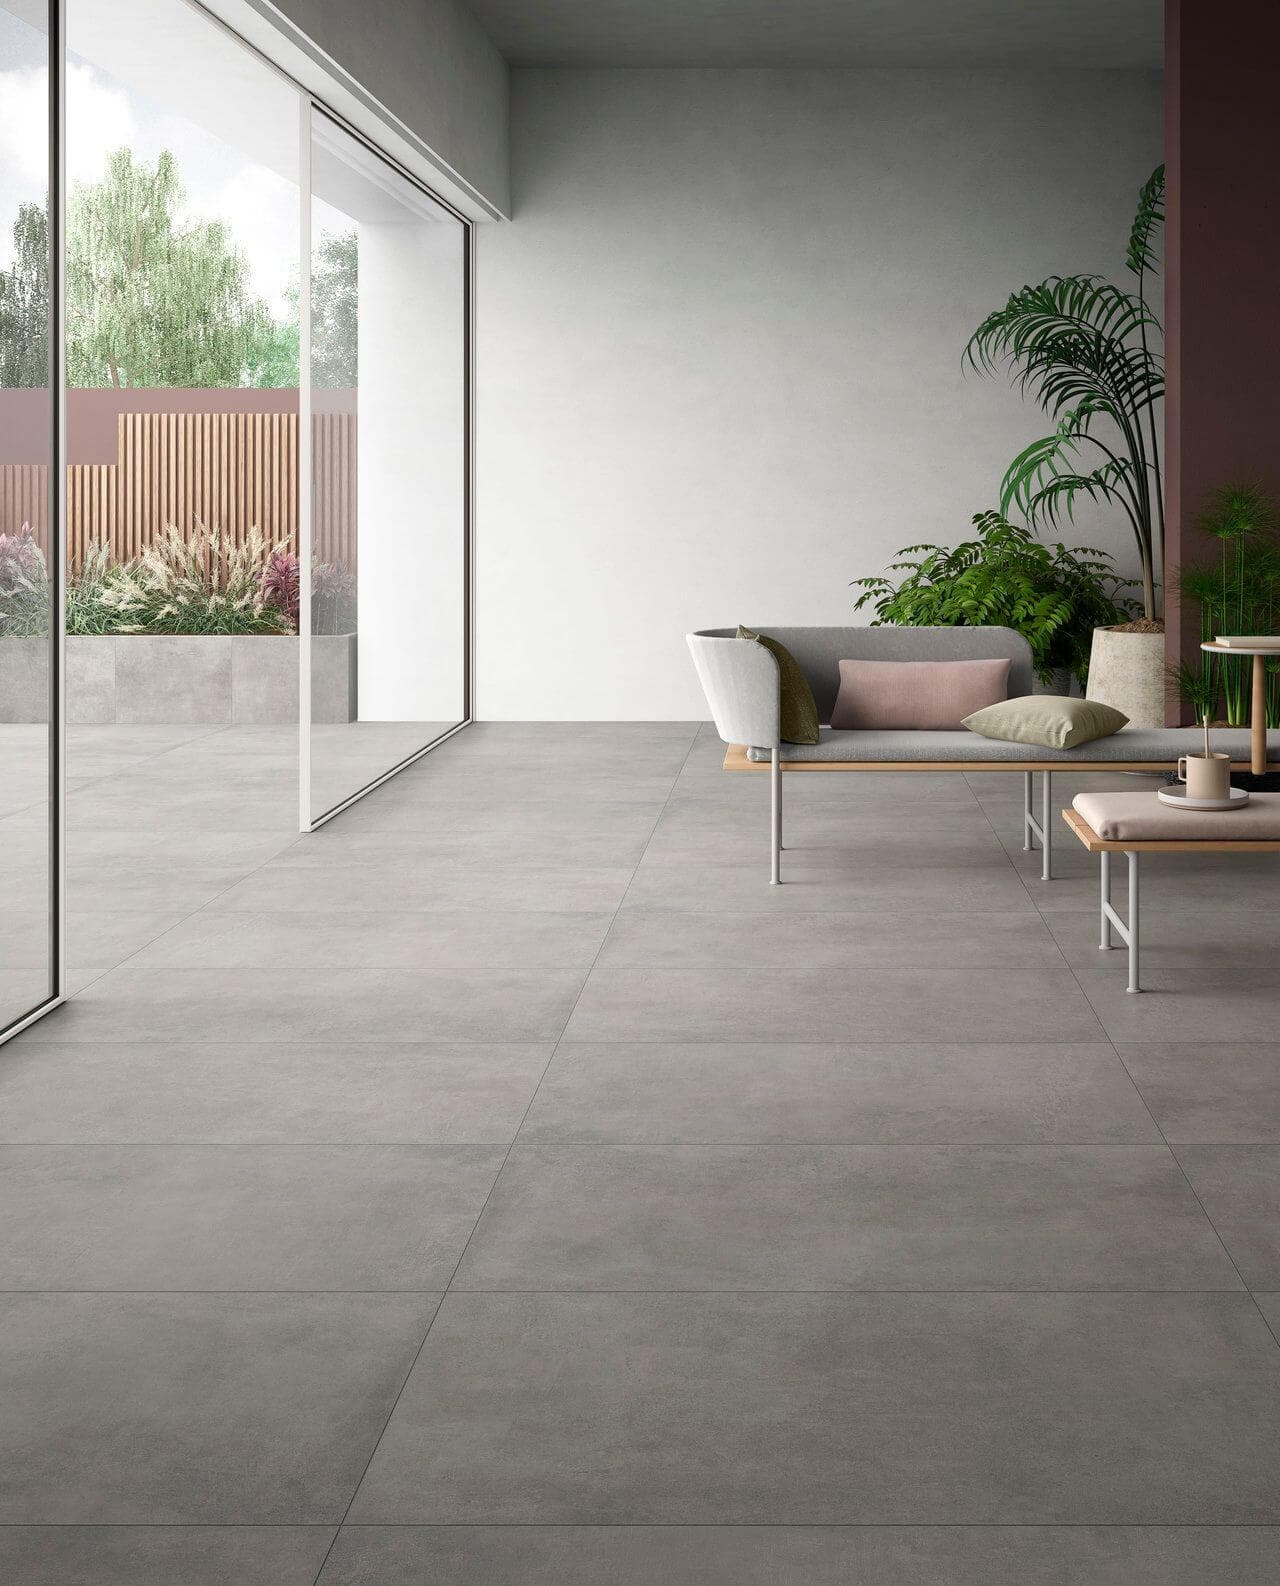 Concrete-look ceramic tile in an indoor-outdoor living room